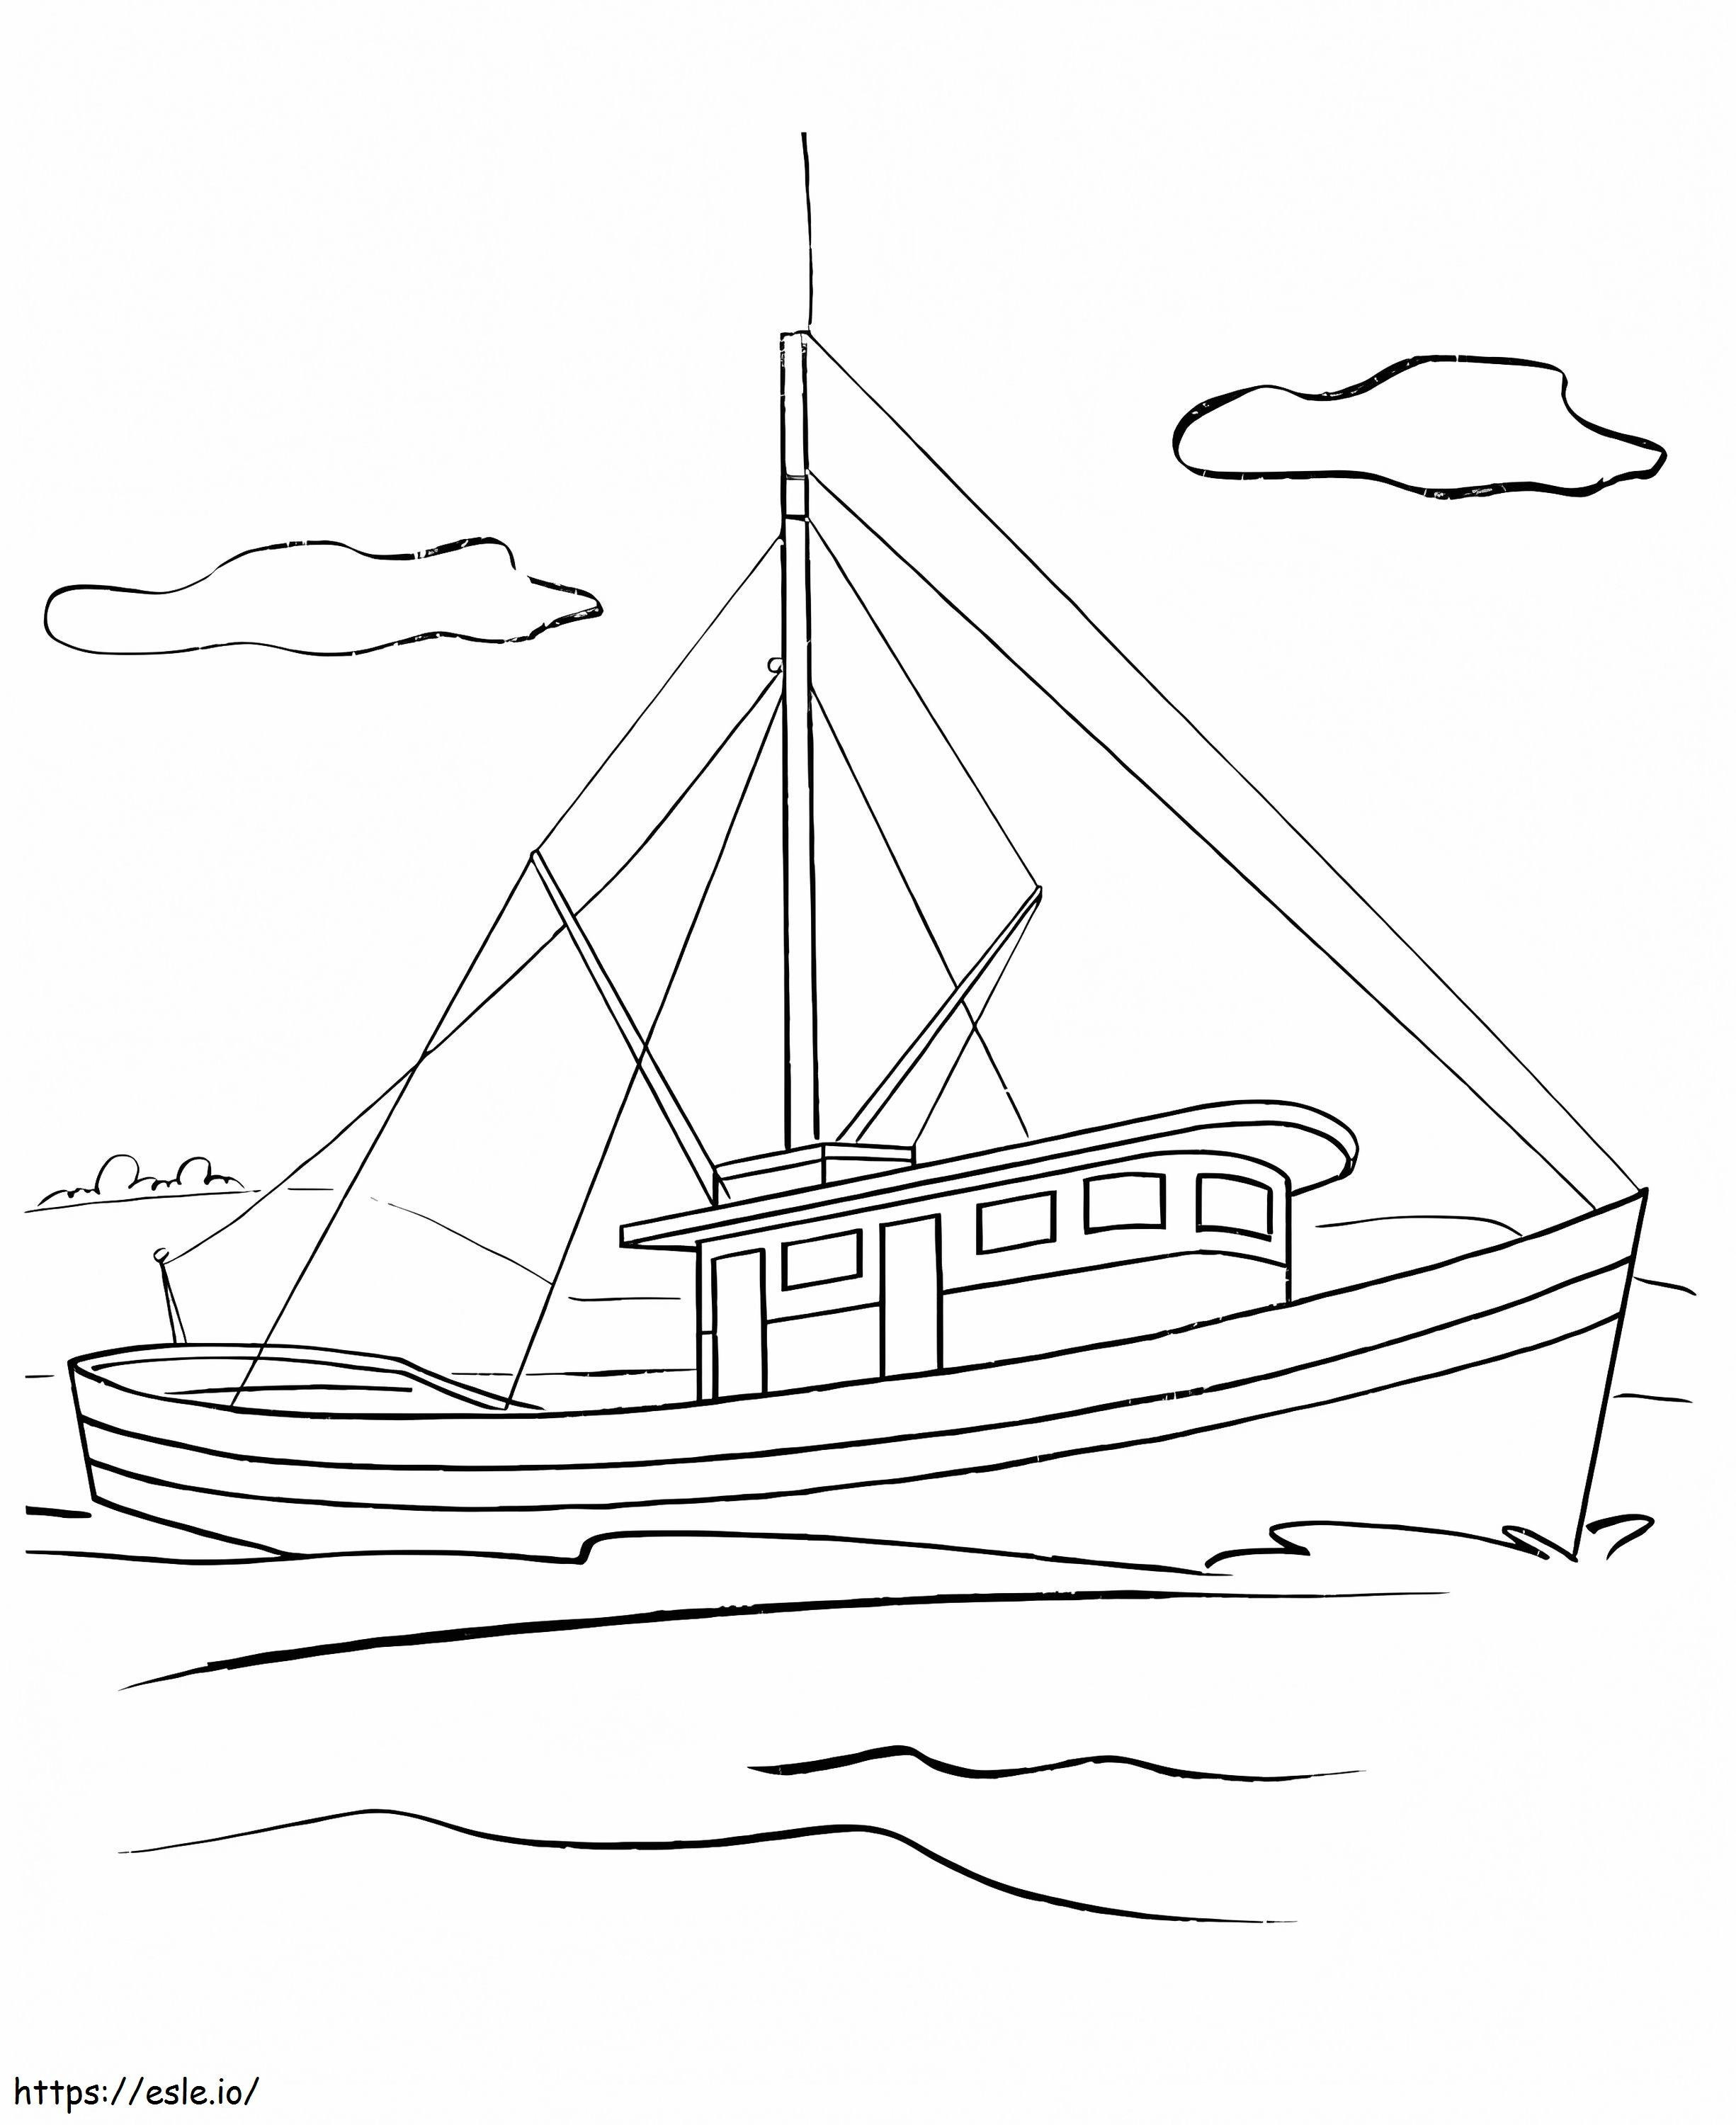 1. csónak kifestő